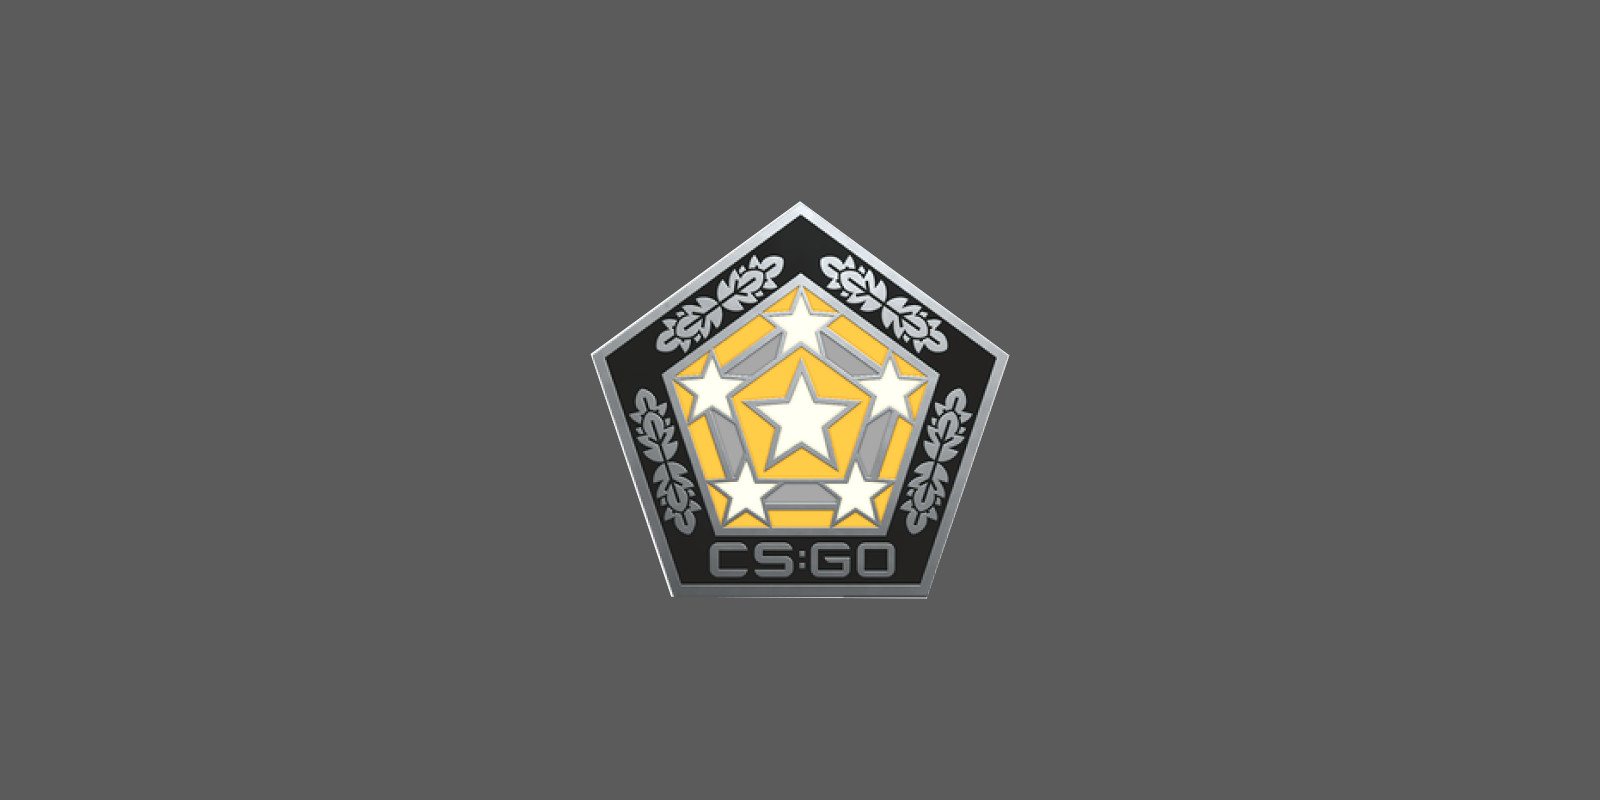 CS:GO - Series 2 - Chroma Collectible Pin